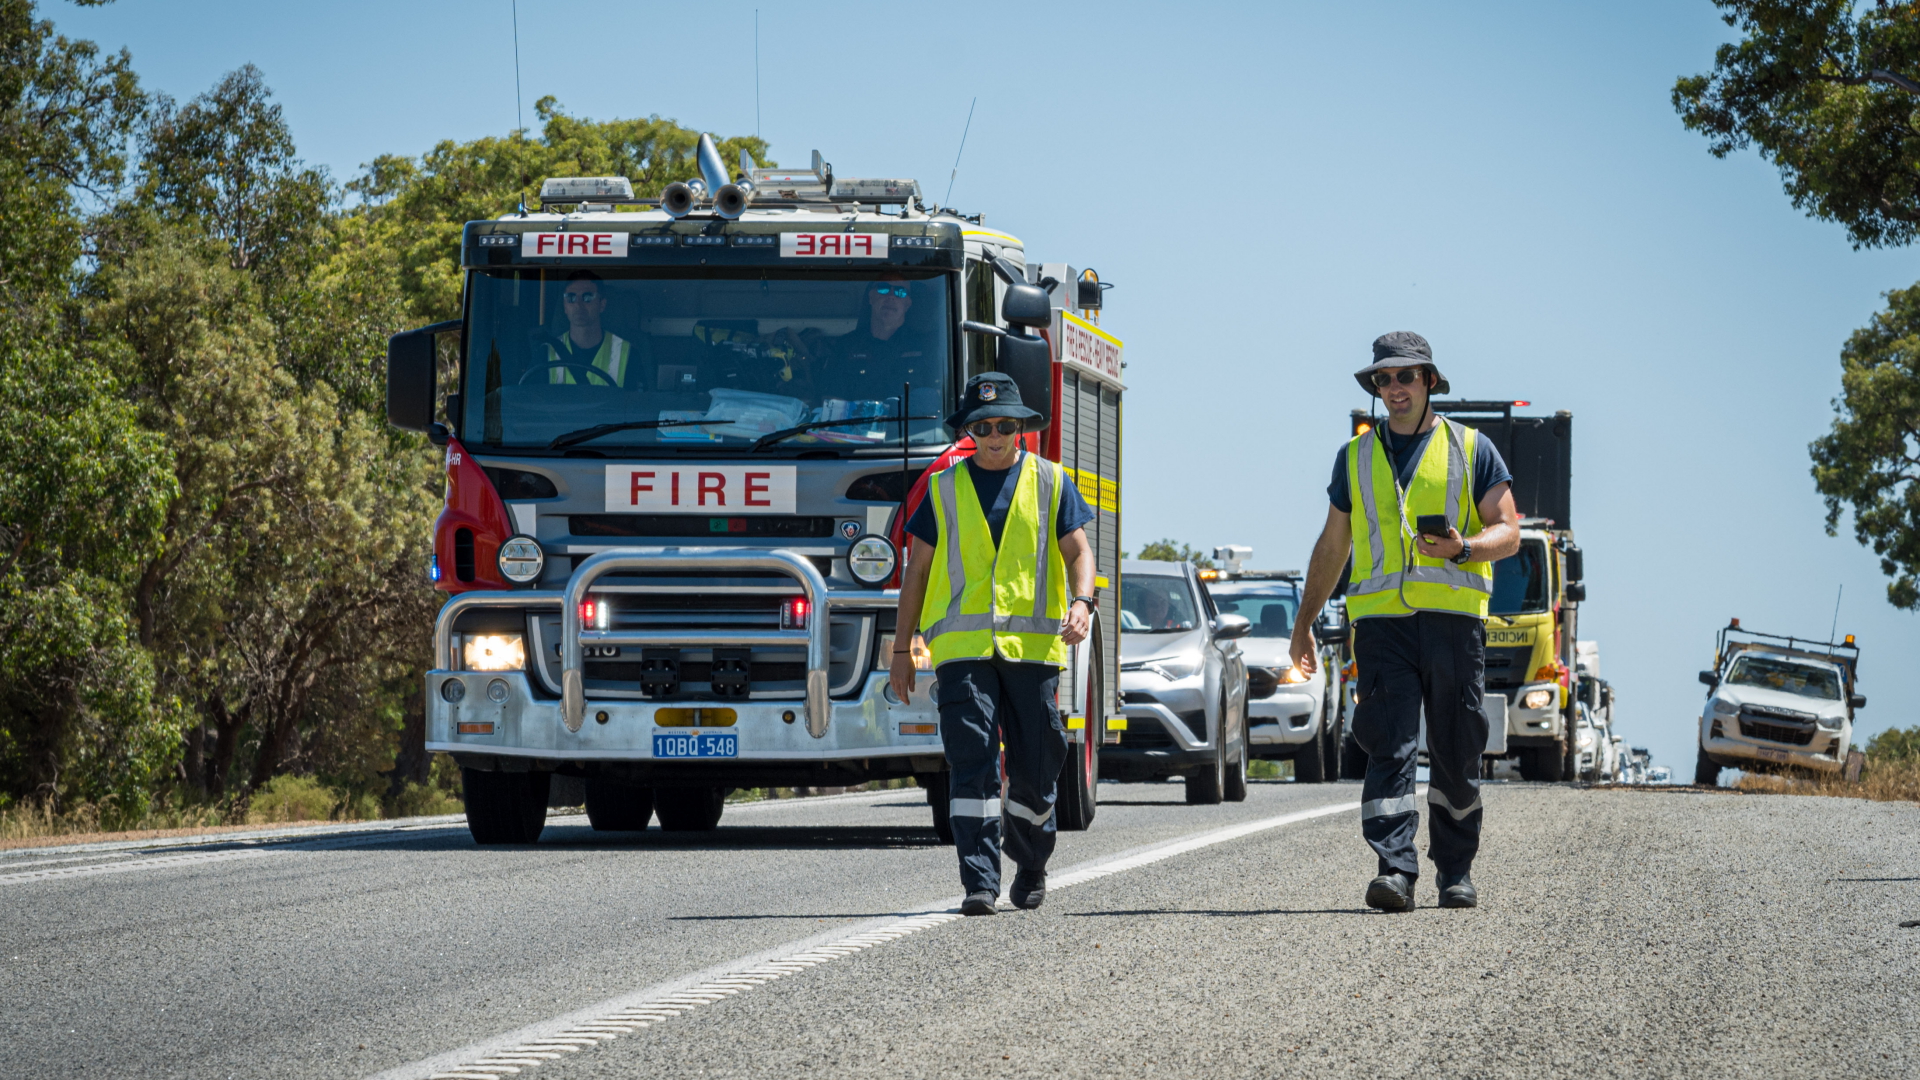 Mitarbeiter des Department of Fire and Emergency Services in Westaustralien, die nach einer winzigen radioaktiven Kapsel suchen.